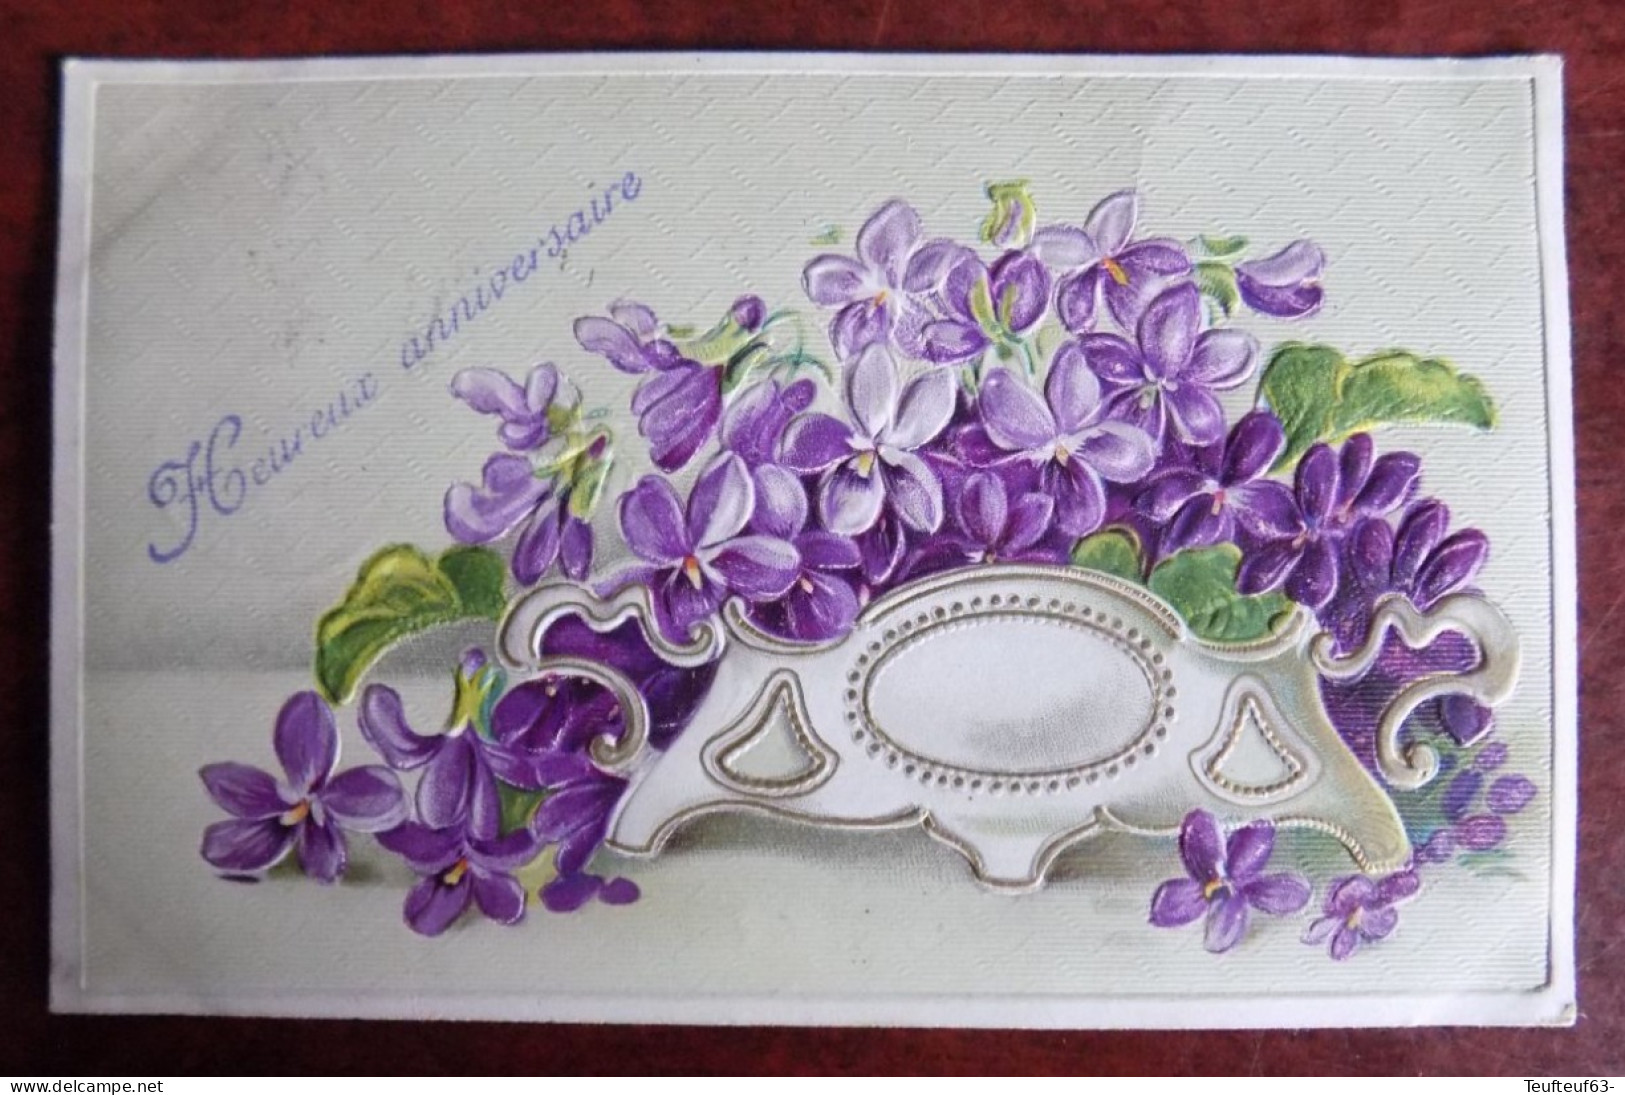 Cpa Fantaisie Heureux Anniversaire Jardinière Avec Fleurs Relief Gaufré - Melle Van Parys Rotselaer 1909 - Verjaardag